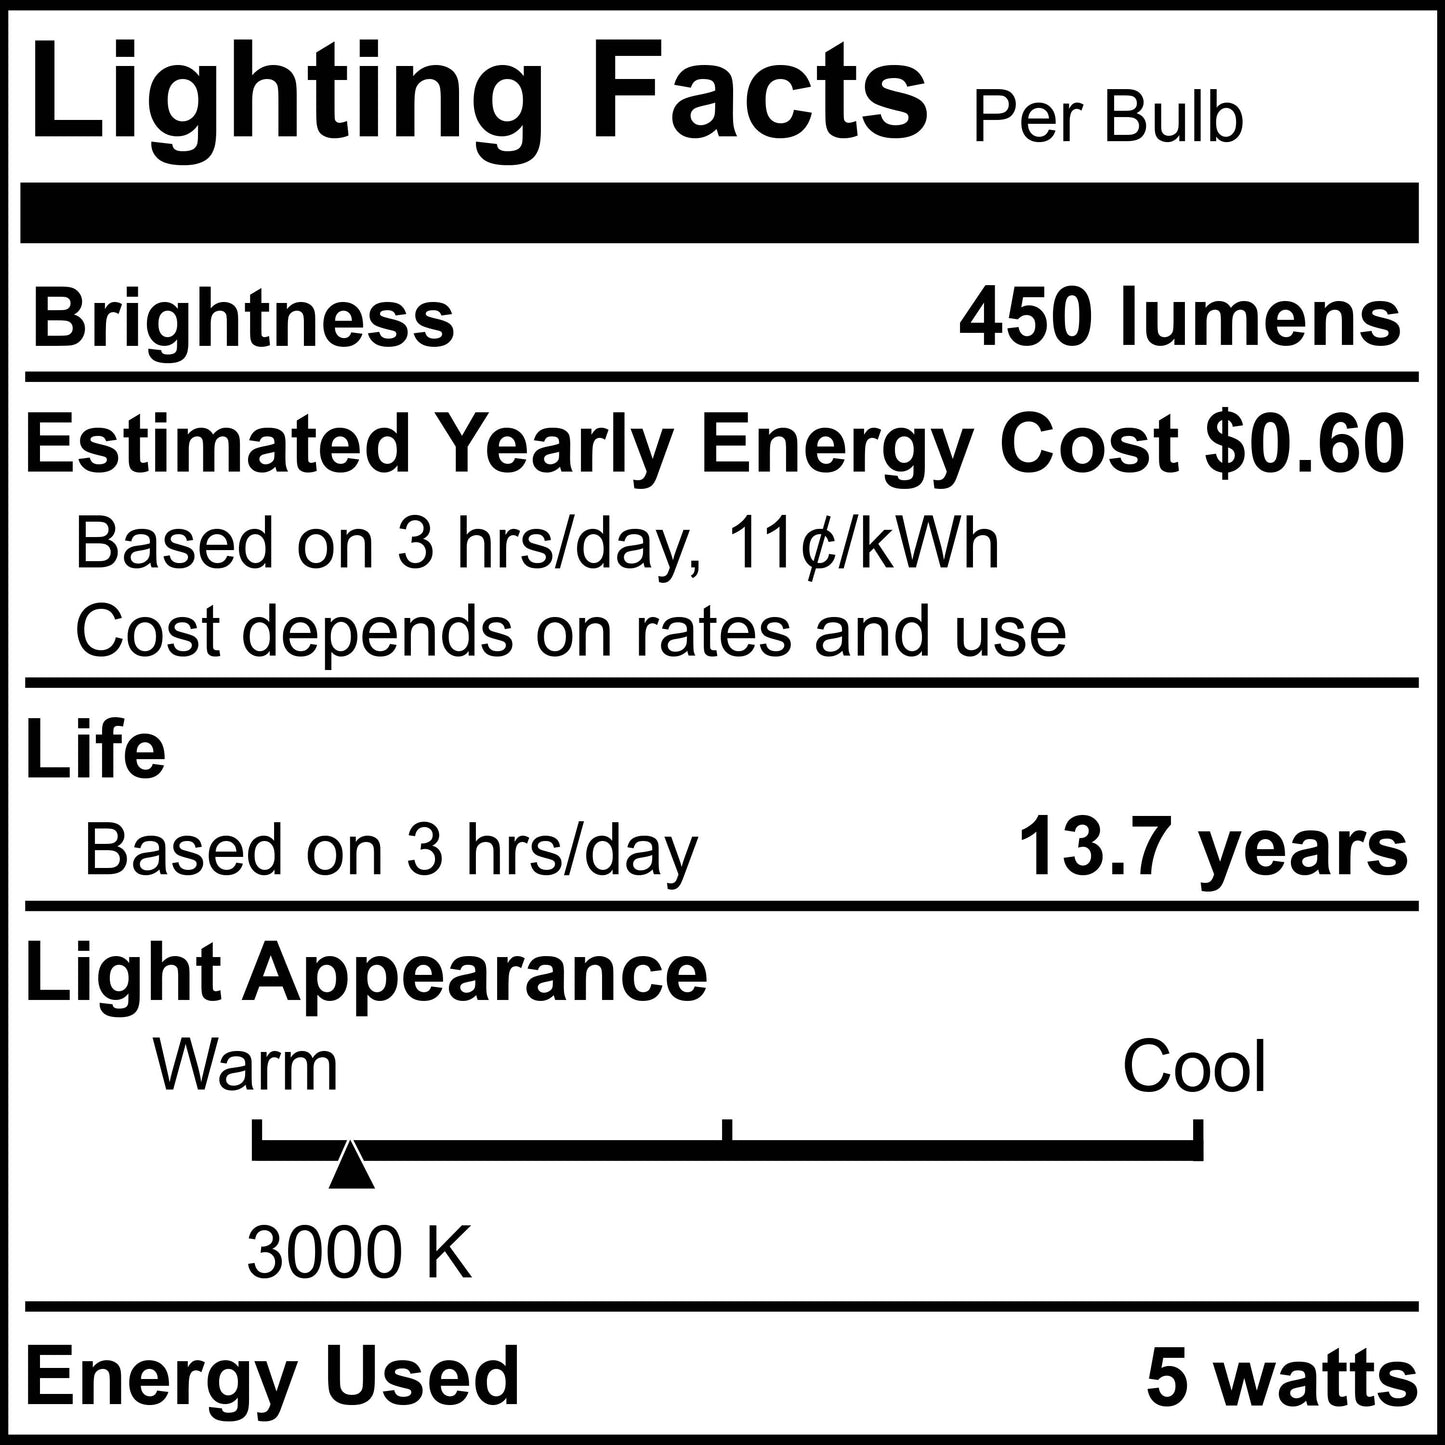 776792 - Frosted Dimmable Tubular 5" T9 LED Light Bulb - 5 Watt - 3000K - 4 Pack